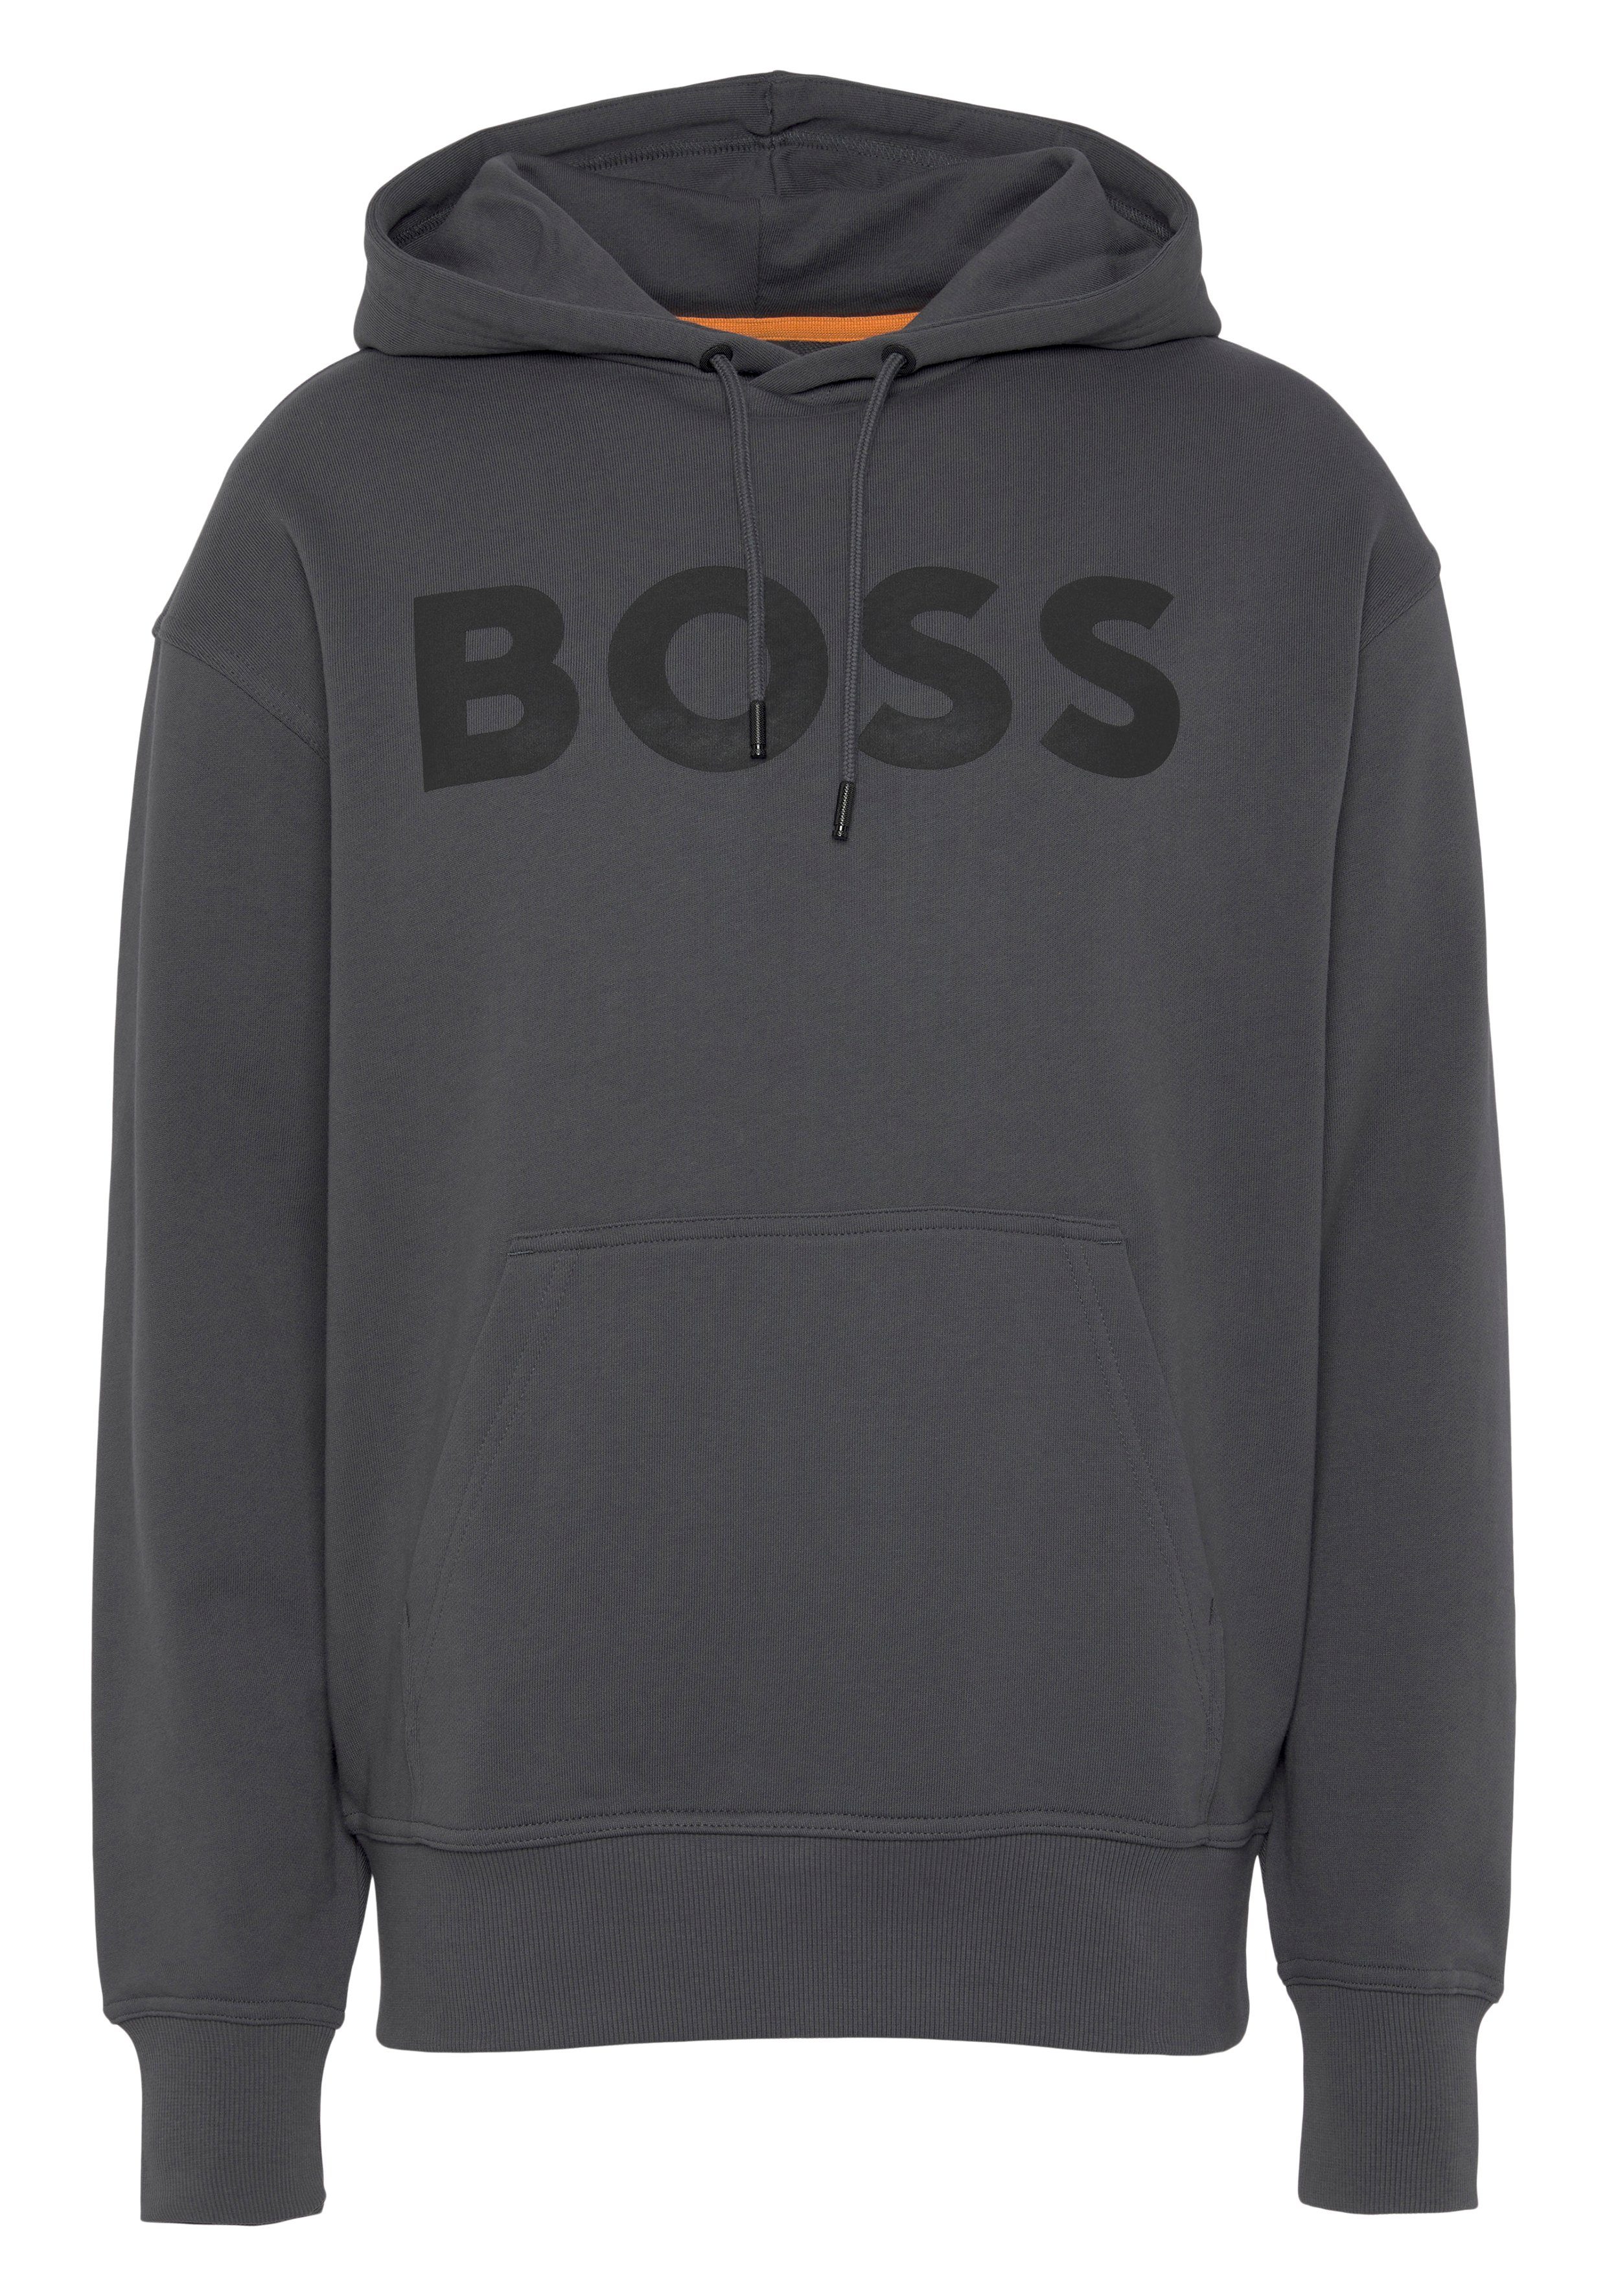 BOSS ORANGE Sweatshirt WebasicHood mit weißem Logodruck dark grey